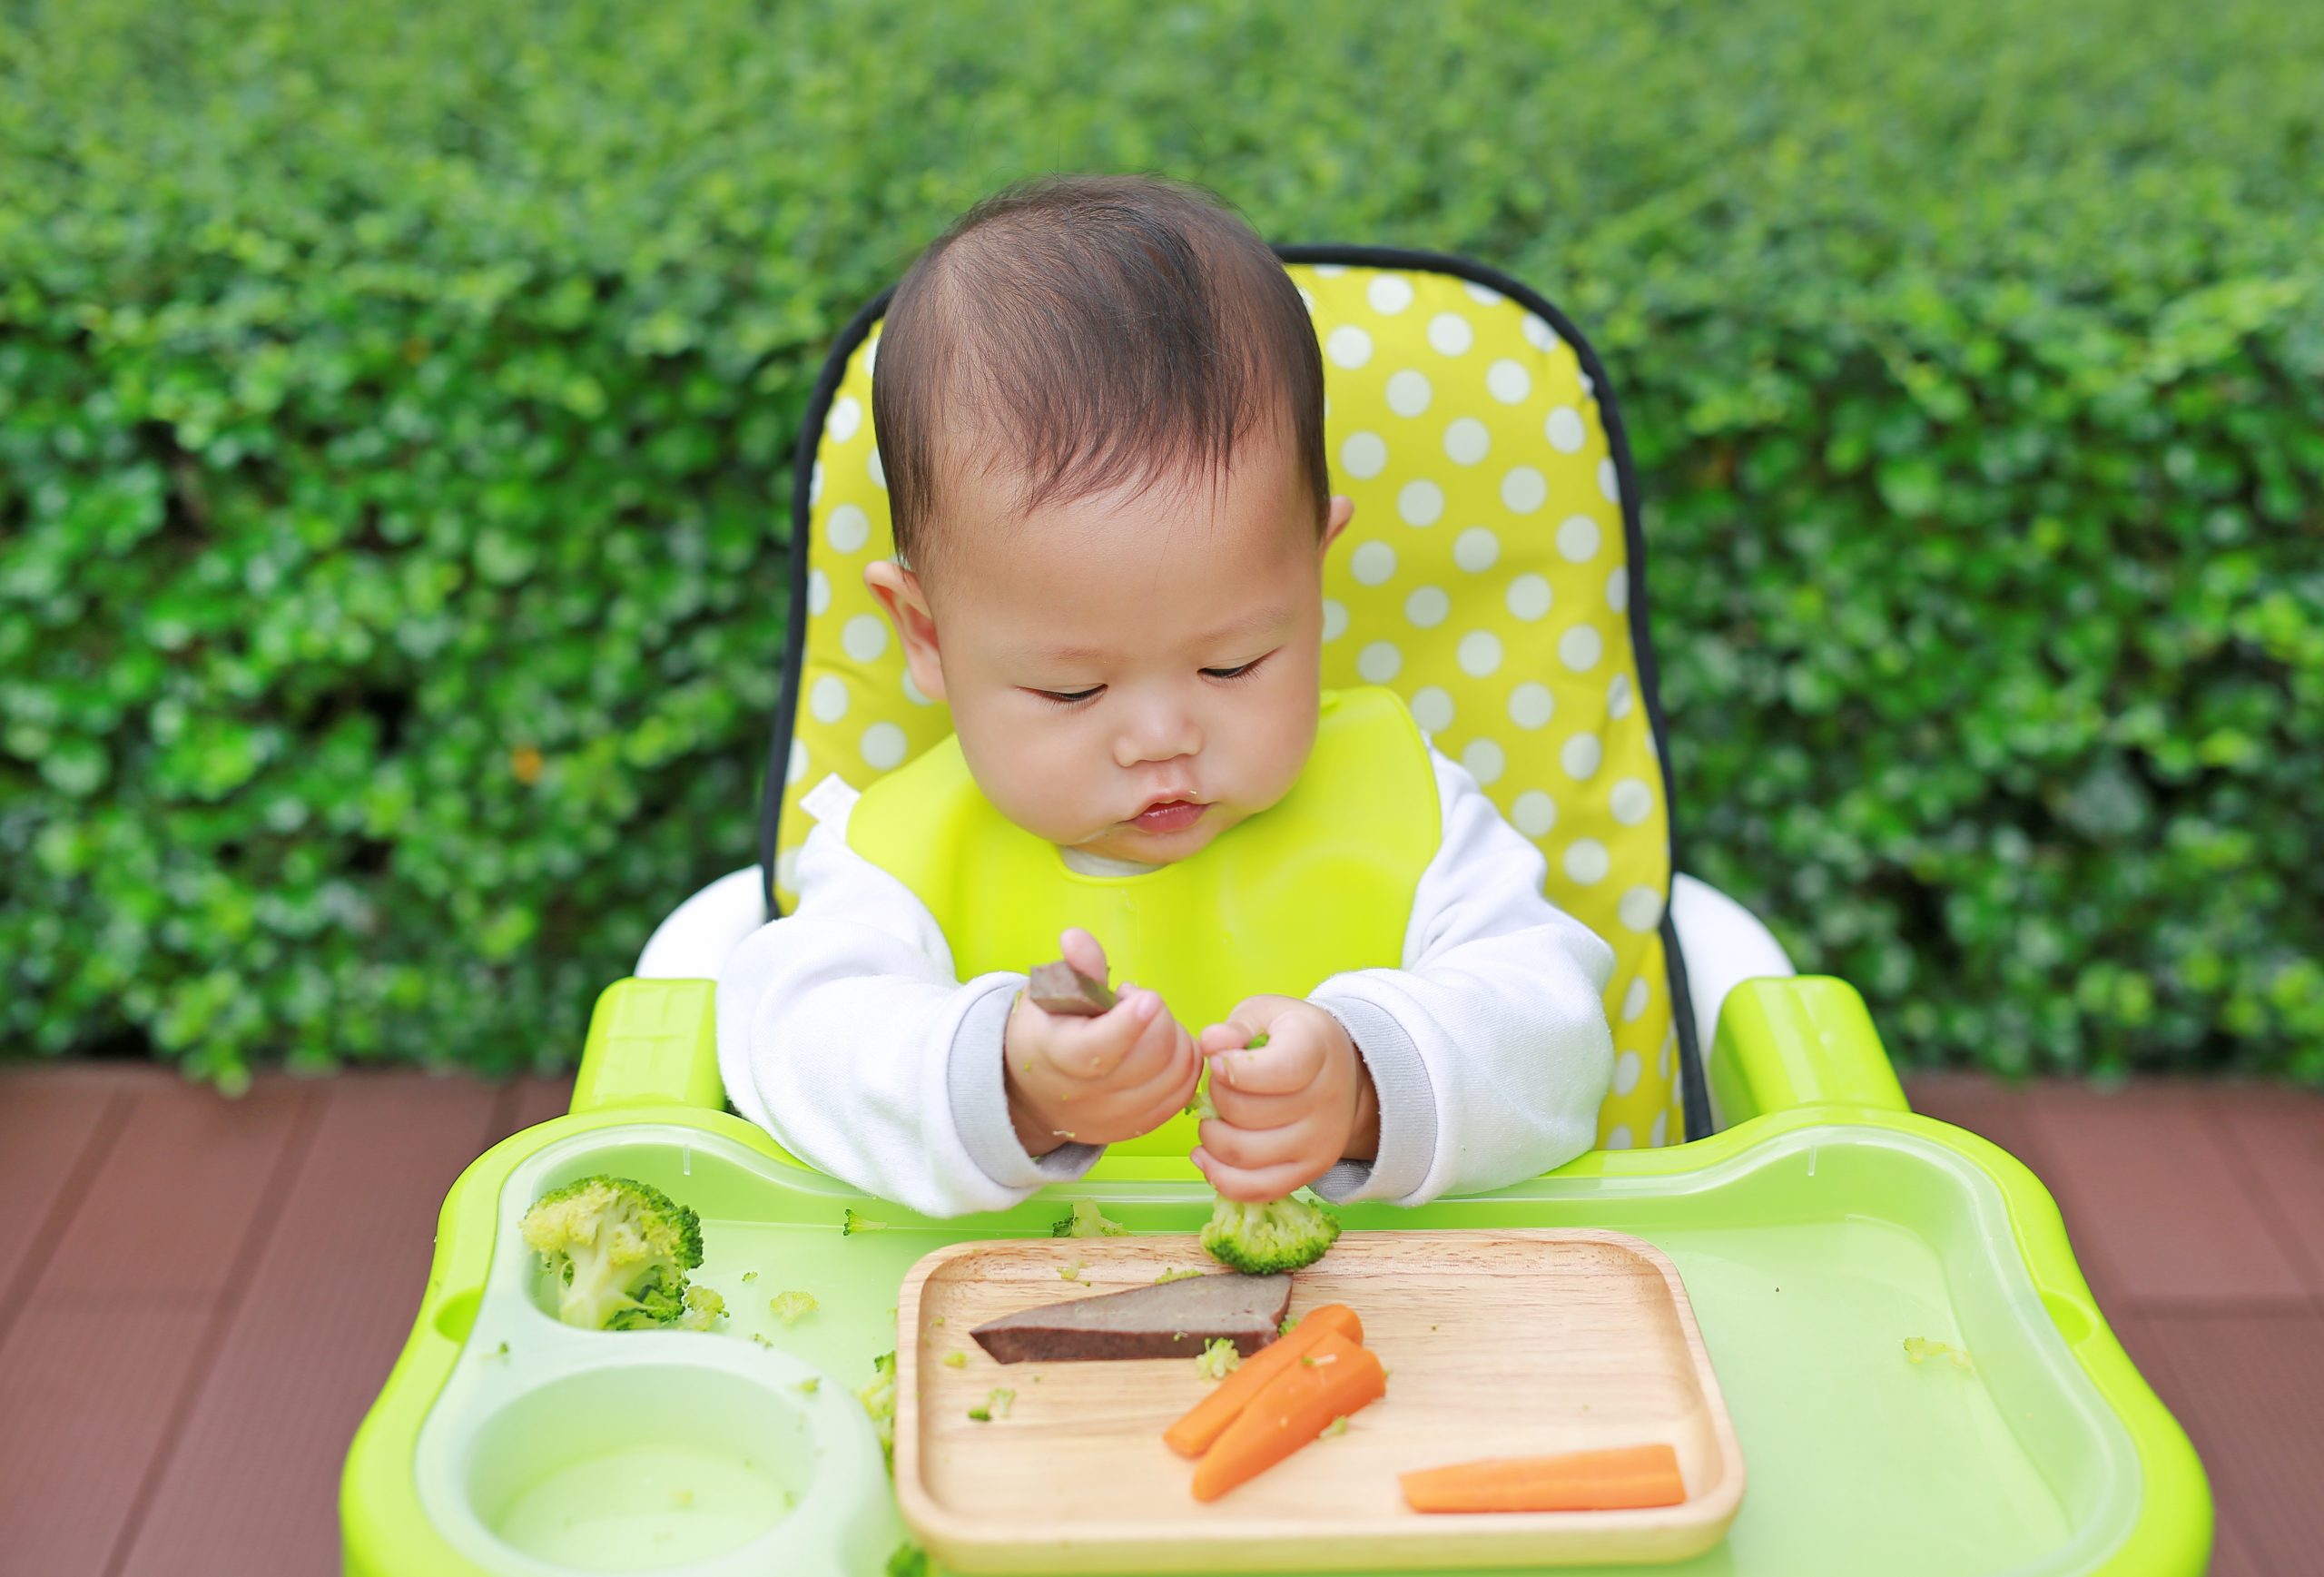 Morceaux et finger food : quand et comment commencer ? - Cuisinez pour bébé